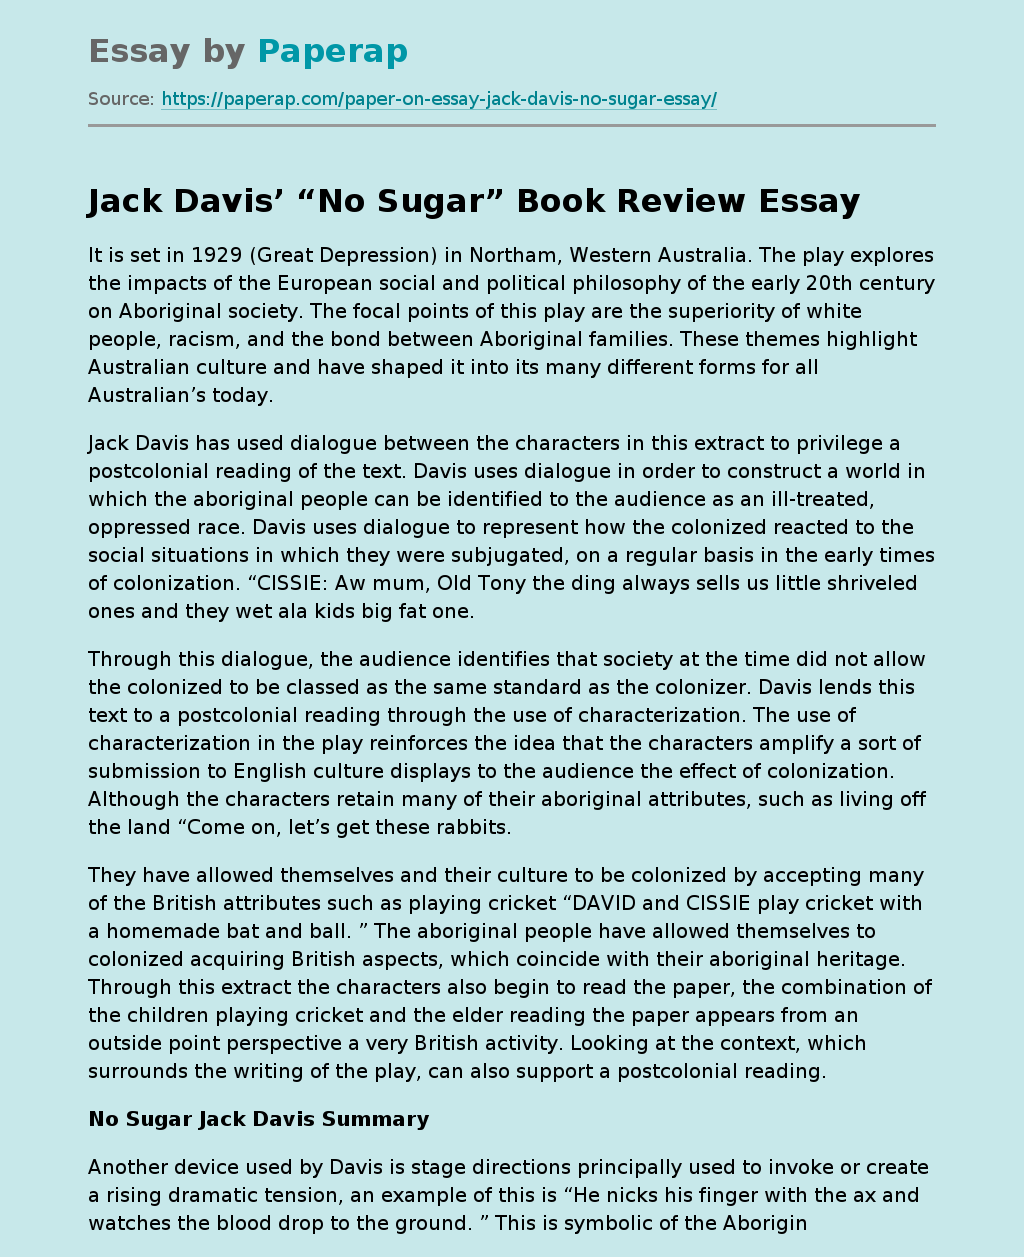 Jack Davis’ “No Sugar” Book Review